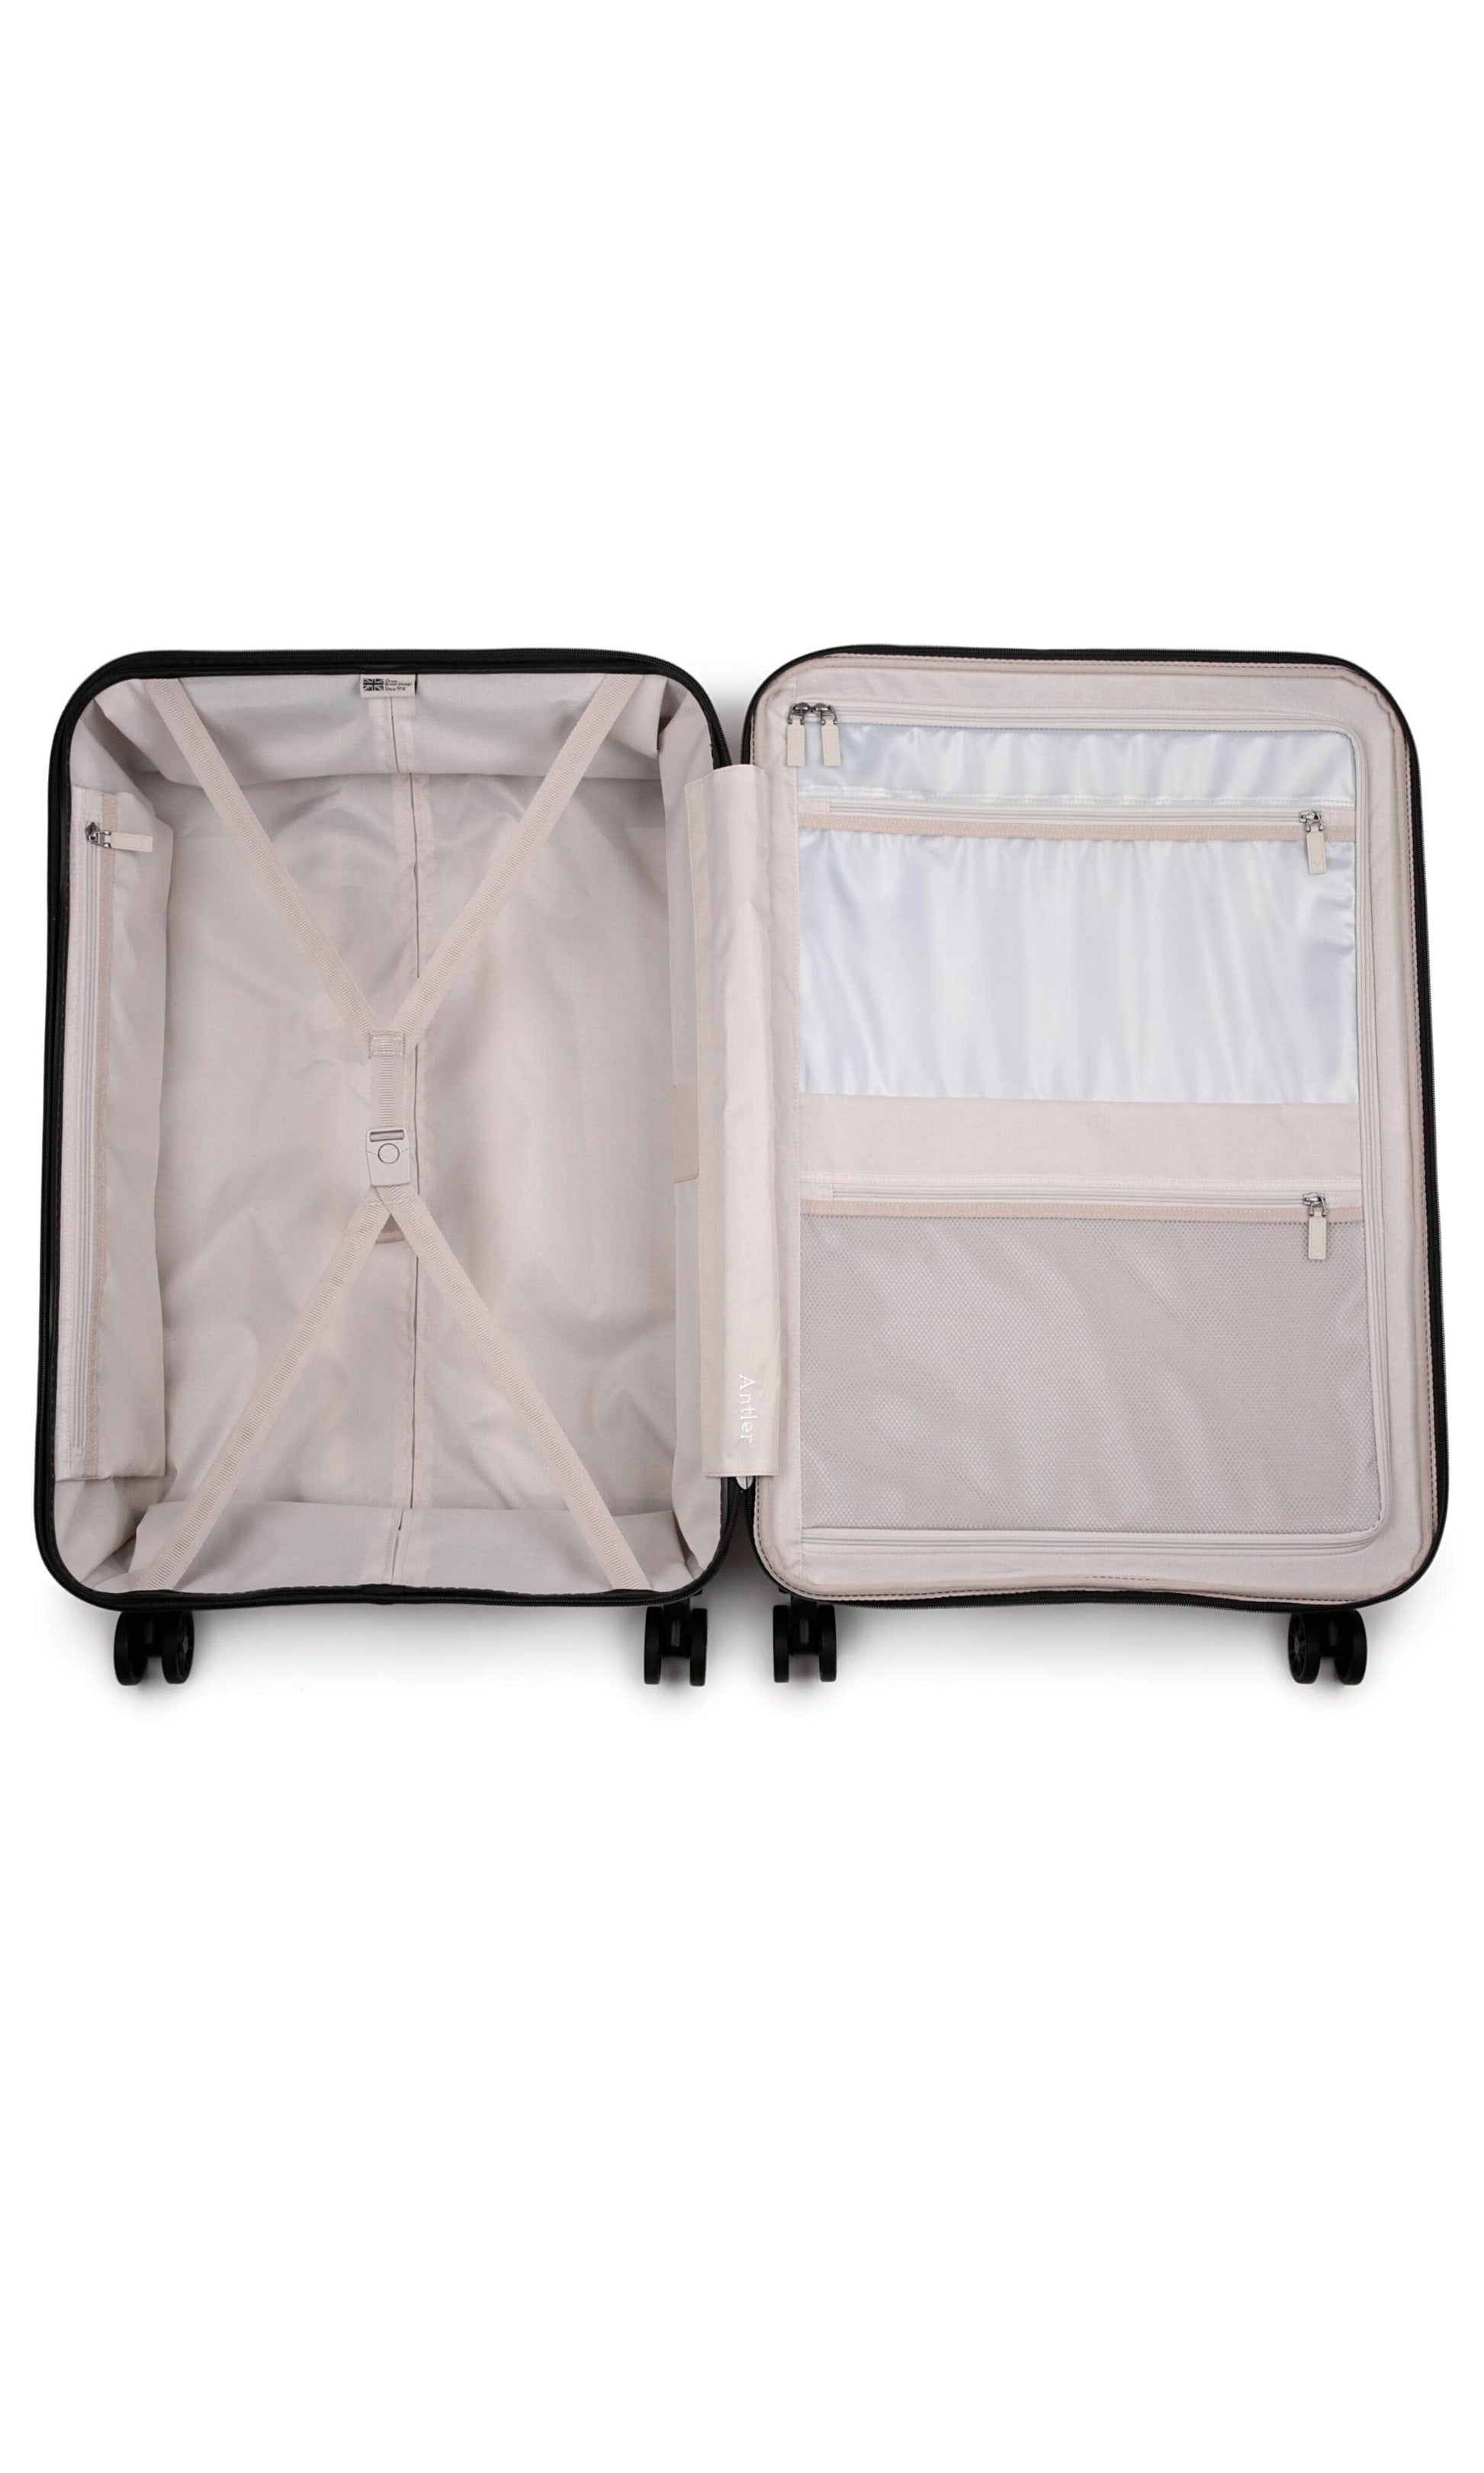 Antler Luggage -  Clifton set in black - Hard Suitcases Clifton Set of 3 Suitcases Black | Hard Suitcase | Antler UK